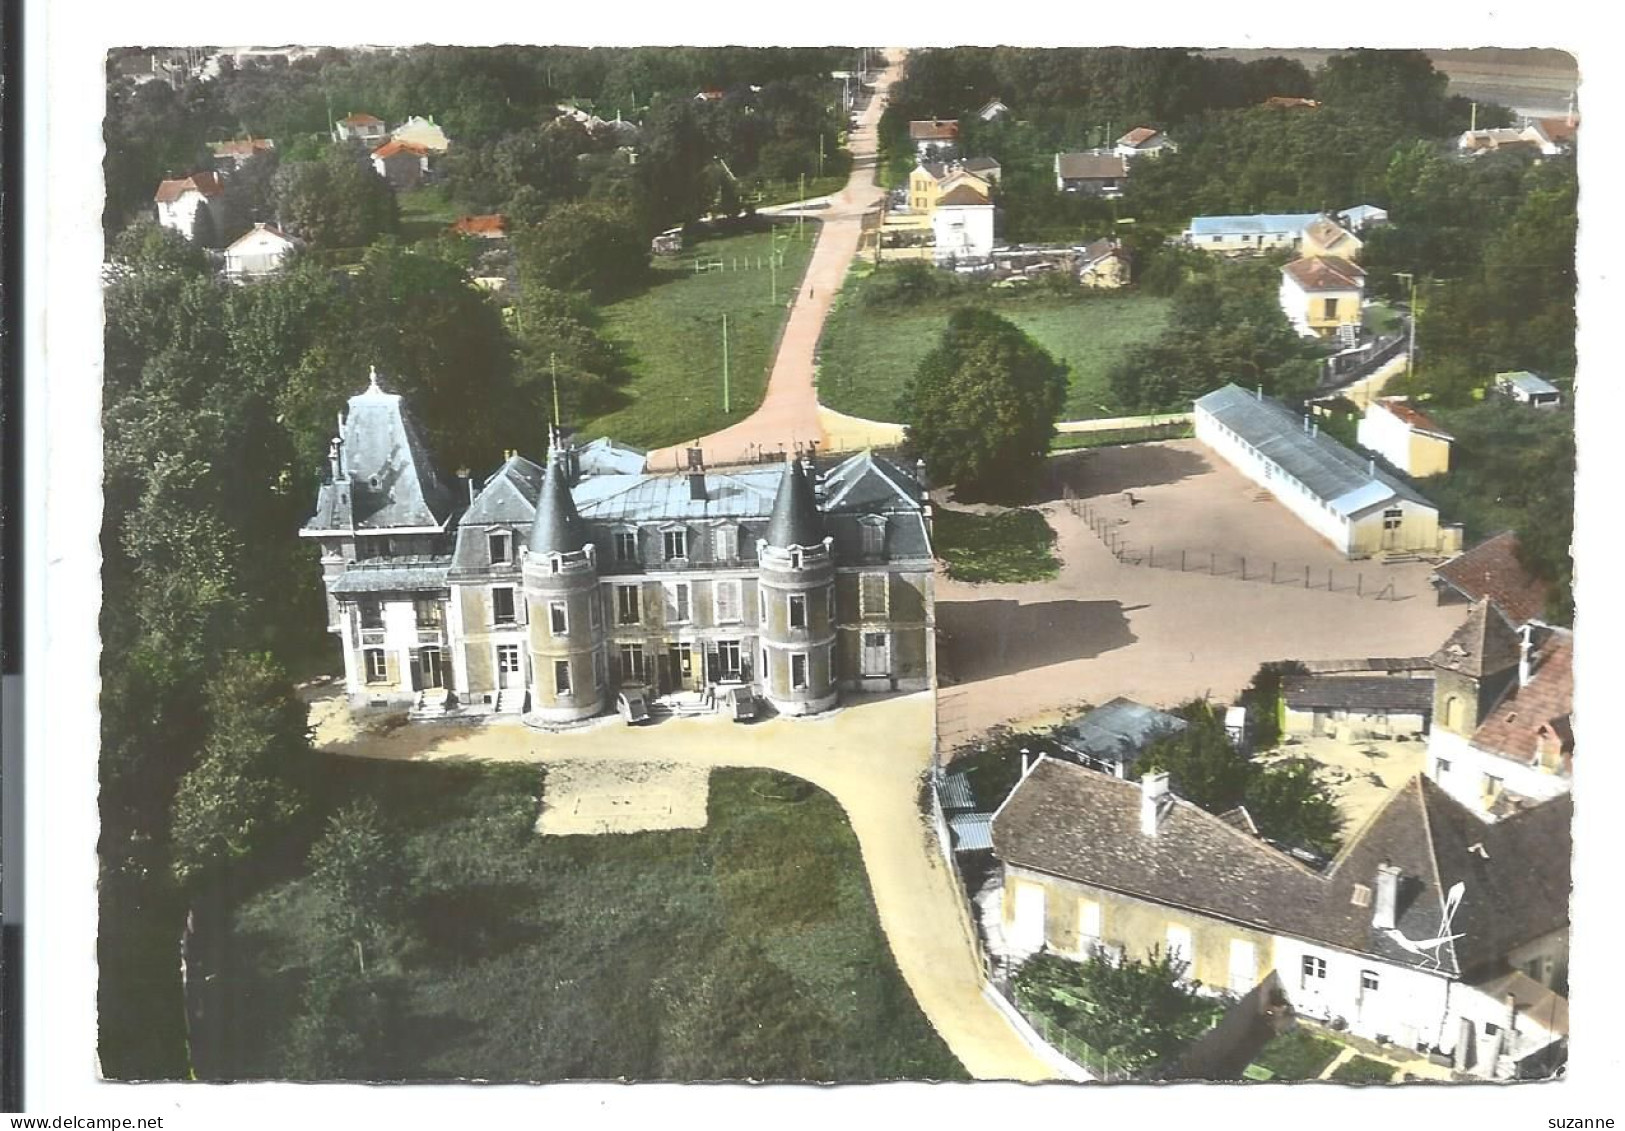 PONTAULT-COMBAULT - Vue Aérienne Château De Pontault - LAPIE 4k - VENTE DIRECTE X - Pontault Combault